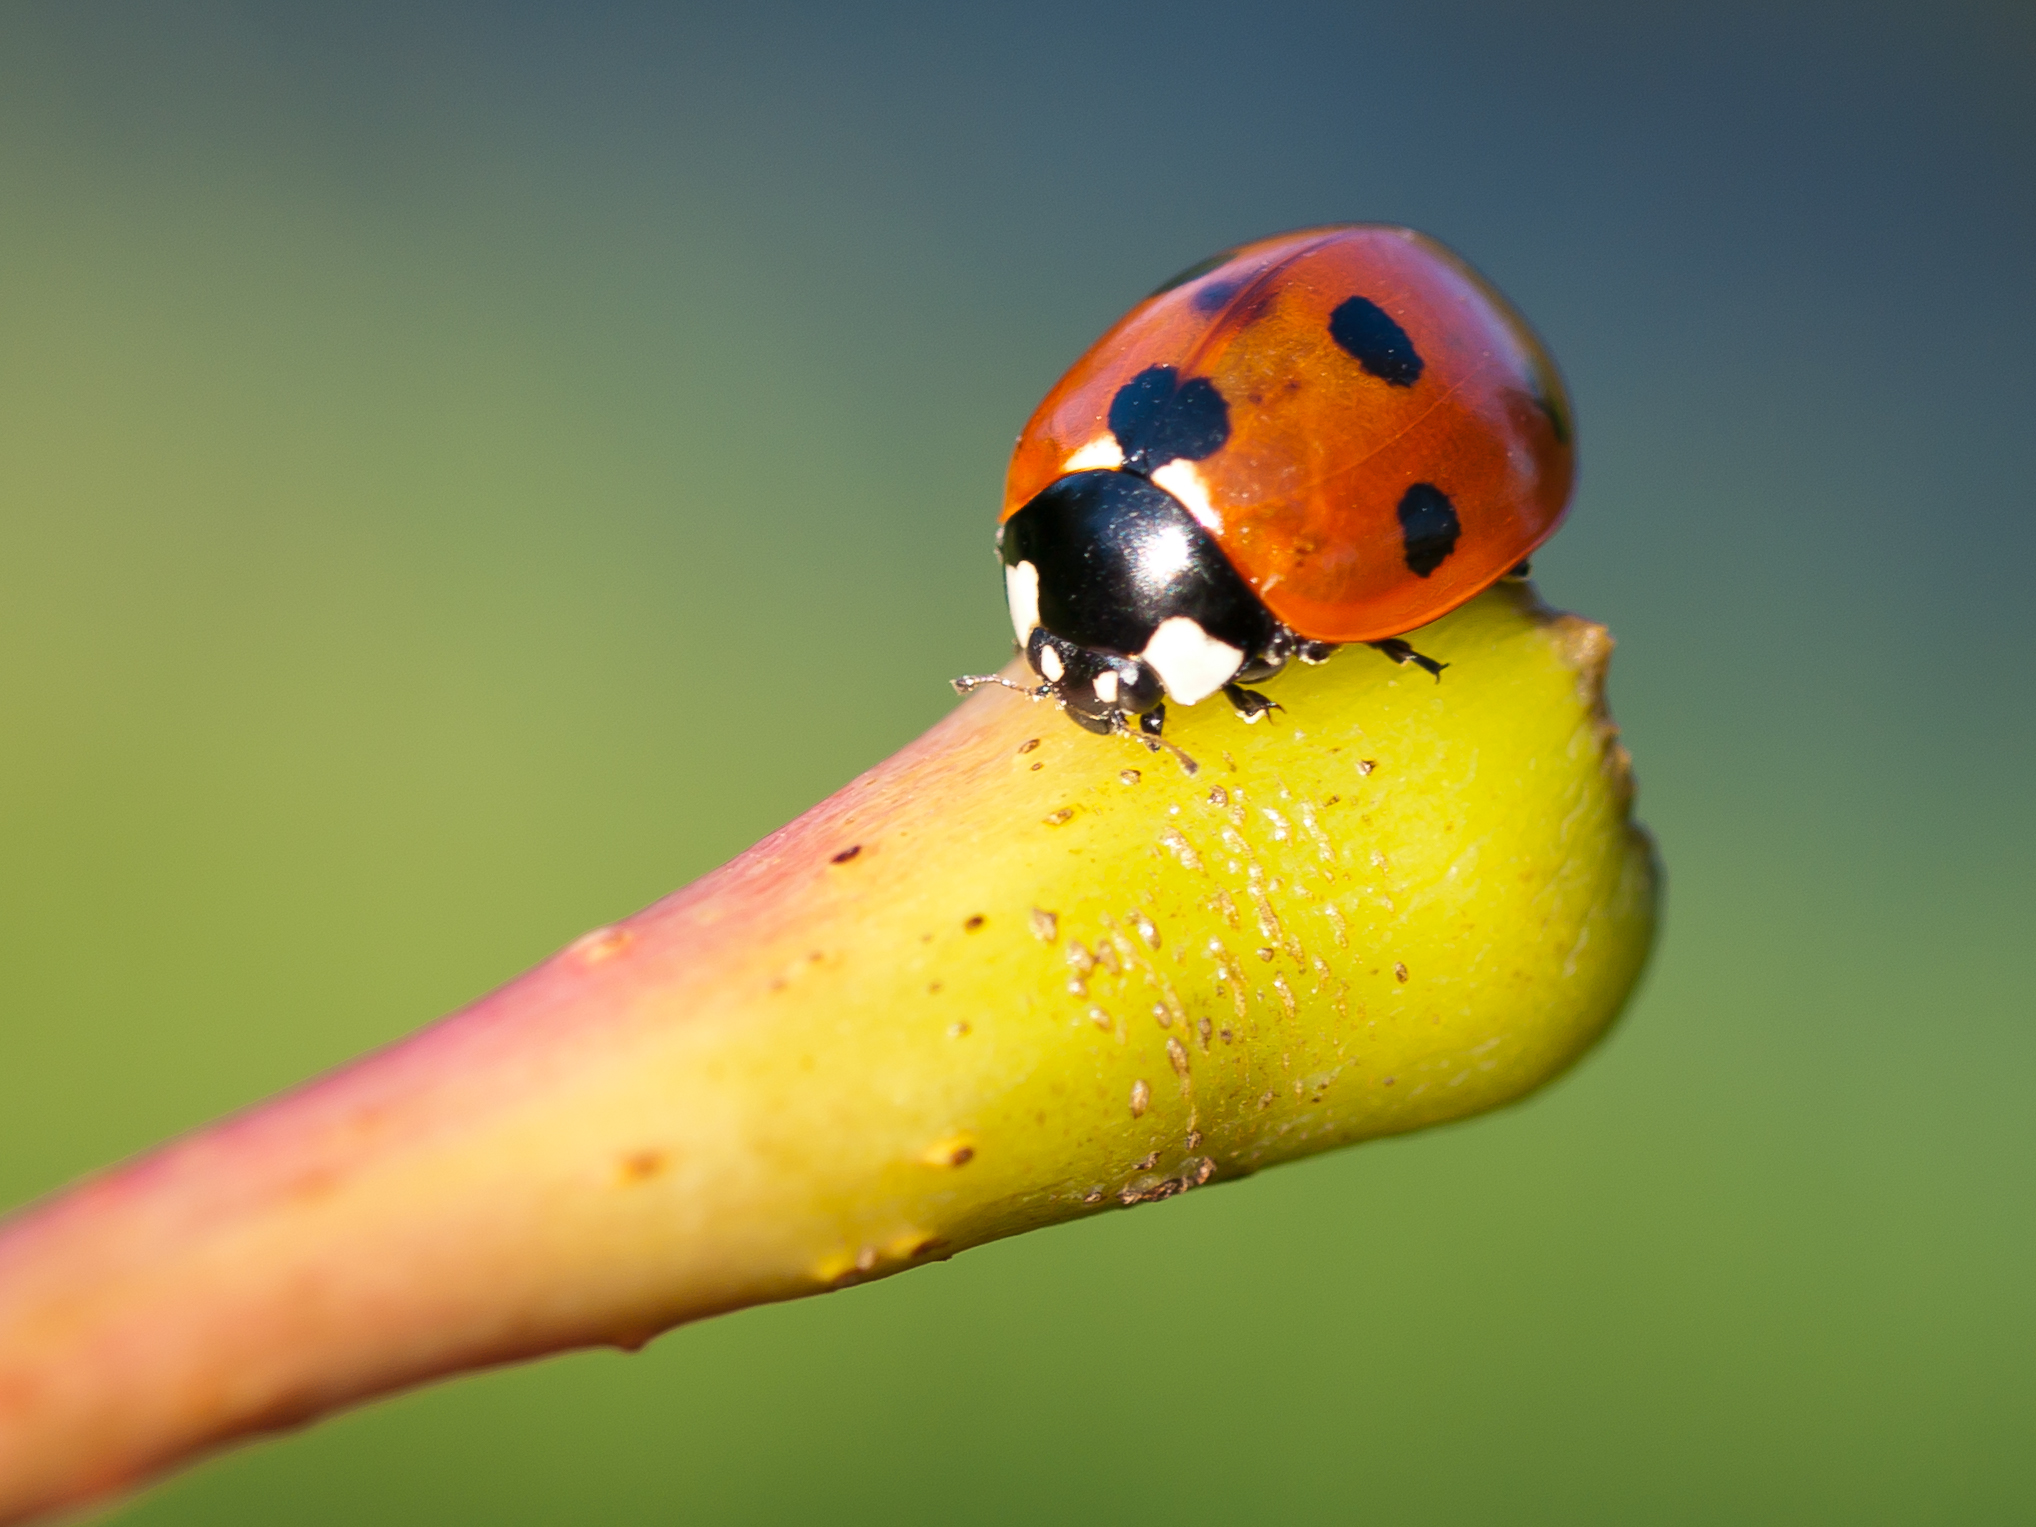 Ladybird on Stalk